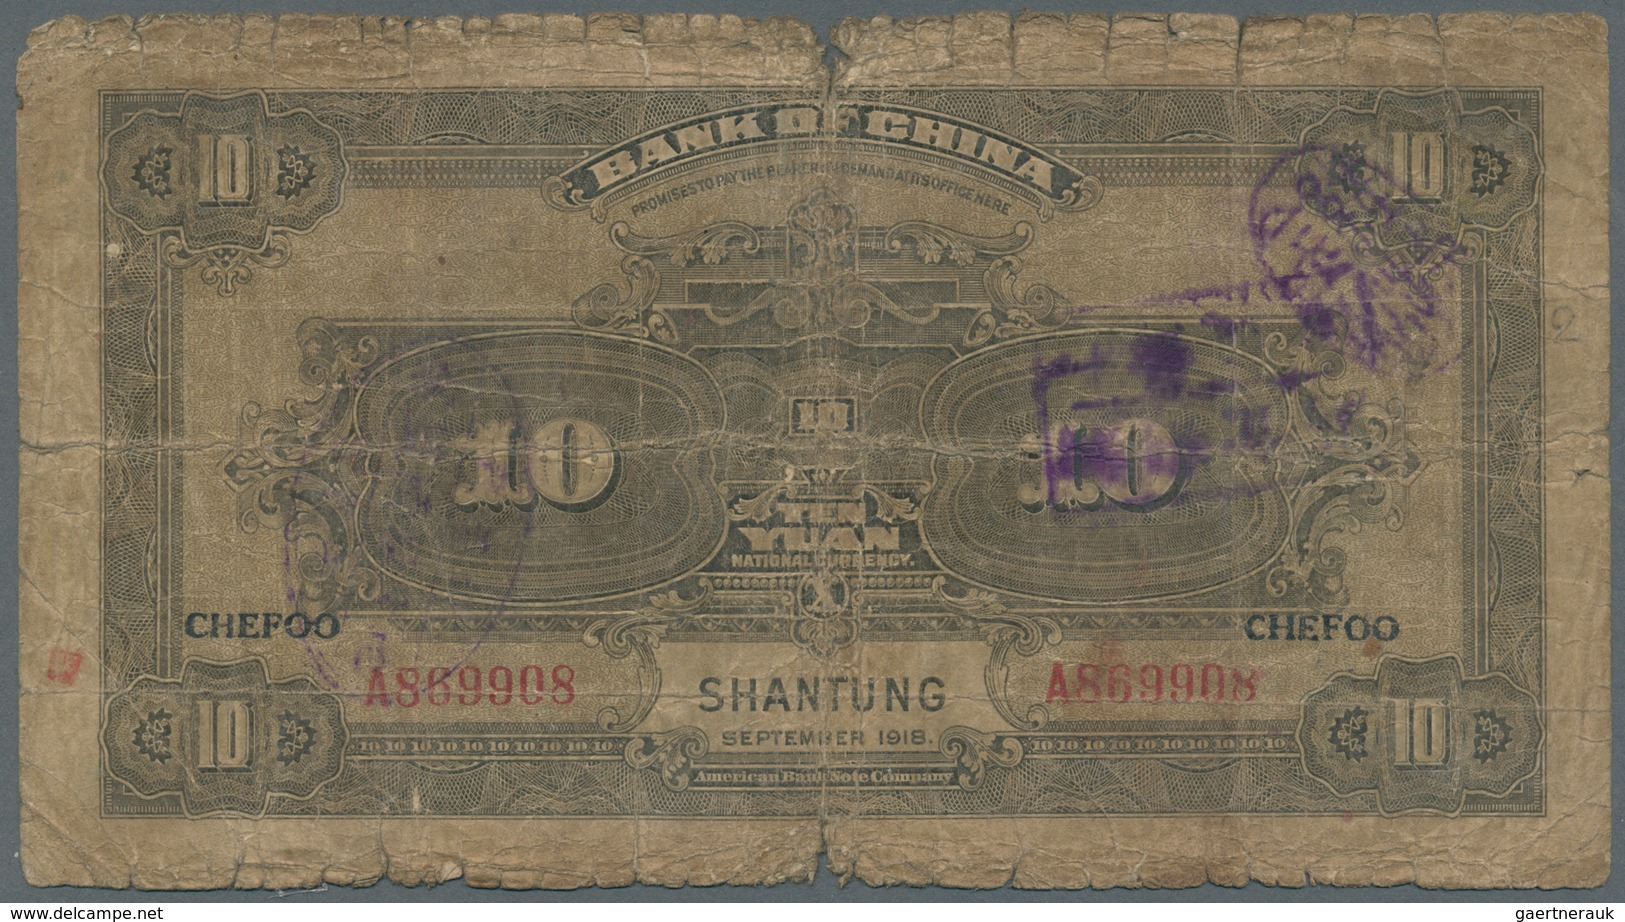 01286 China: set of 9 banknotes containing 2x 1 Juan Shanghai 1918 Pick 51m (F- and F), 1 Yuan Tientsin 19